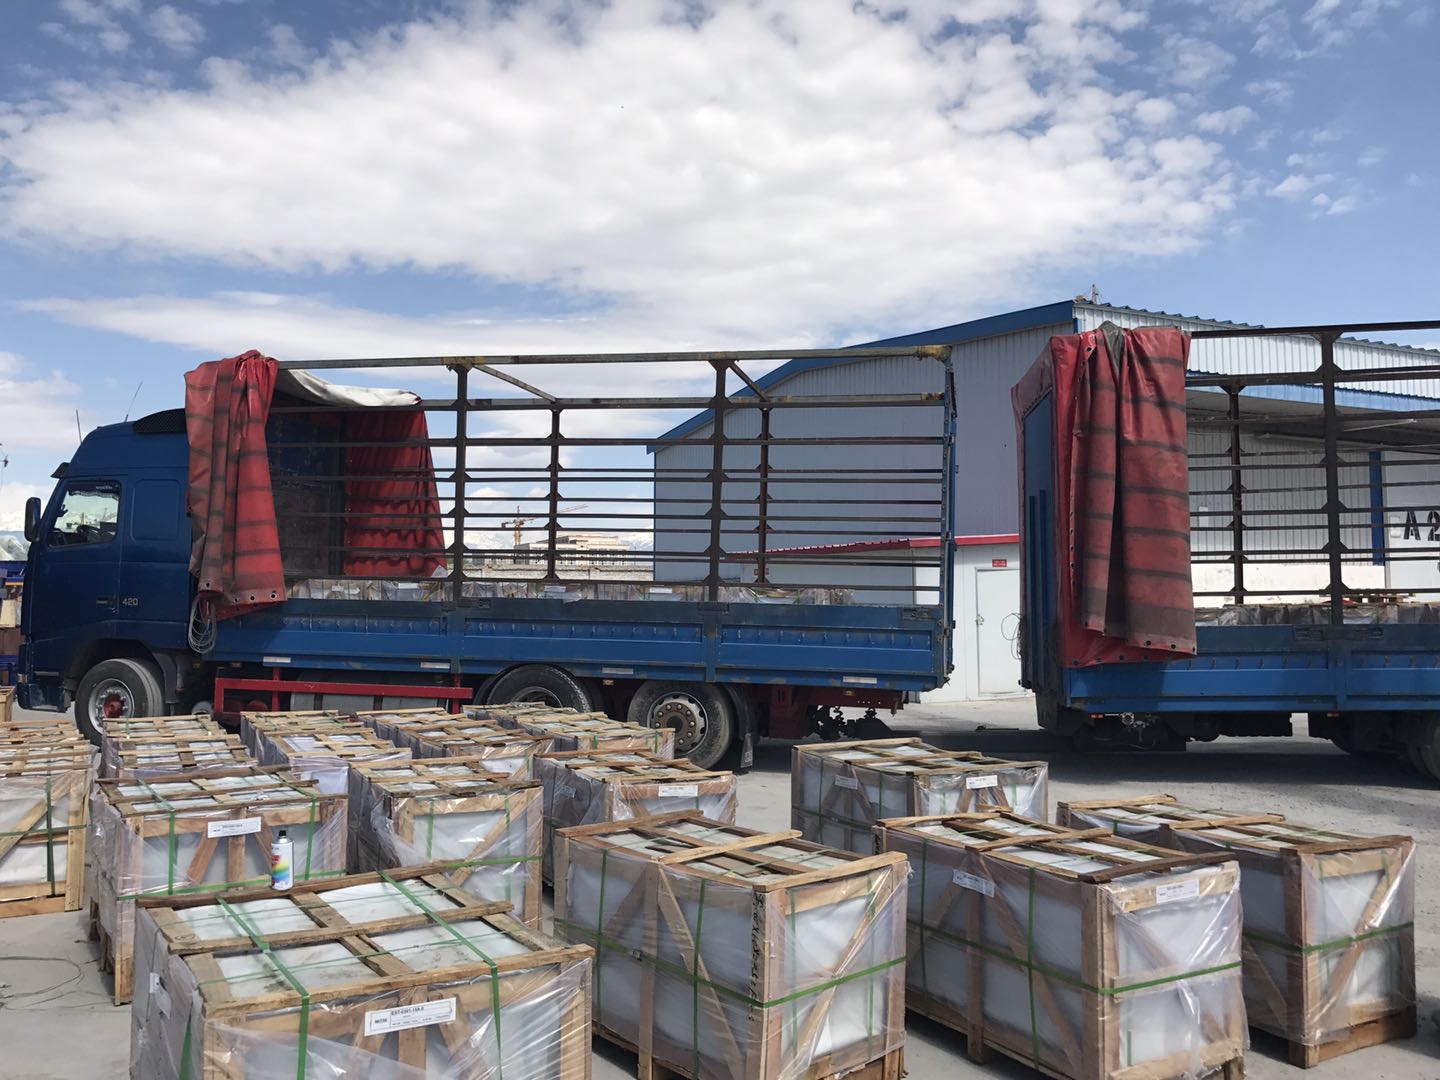 吉尔吉斯坦设备运输 吉尔吉斯坦汽配运输 吉尔吉斯坦运输价格